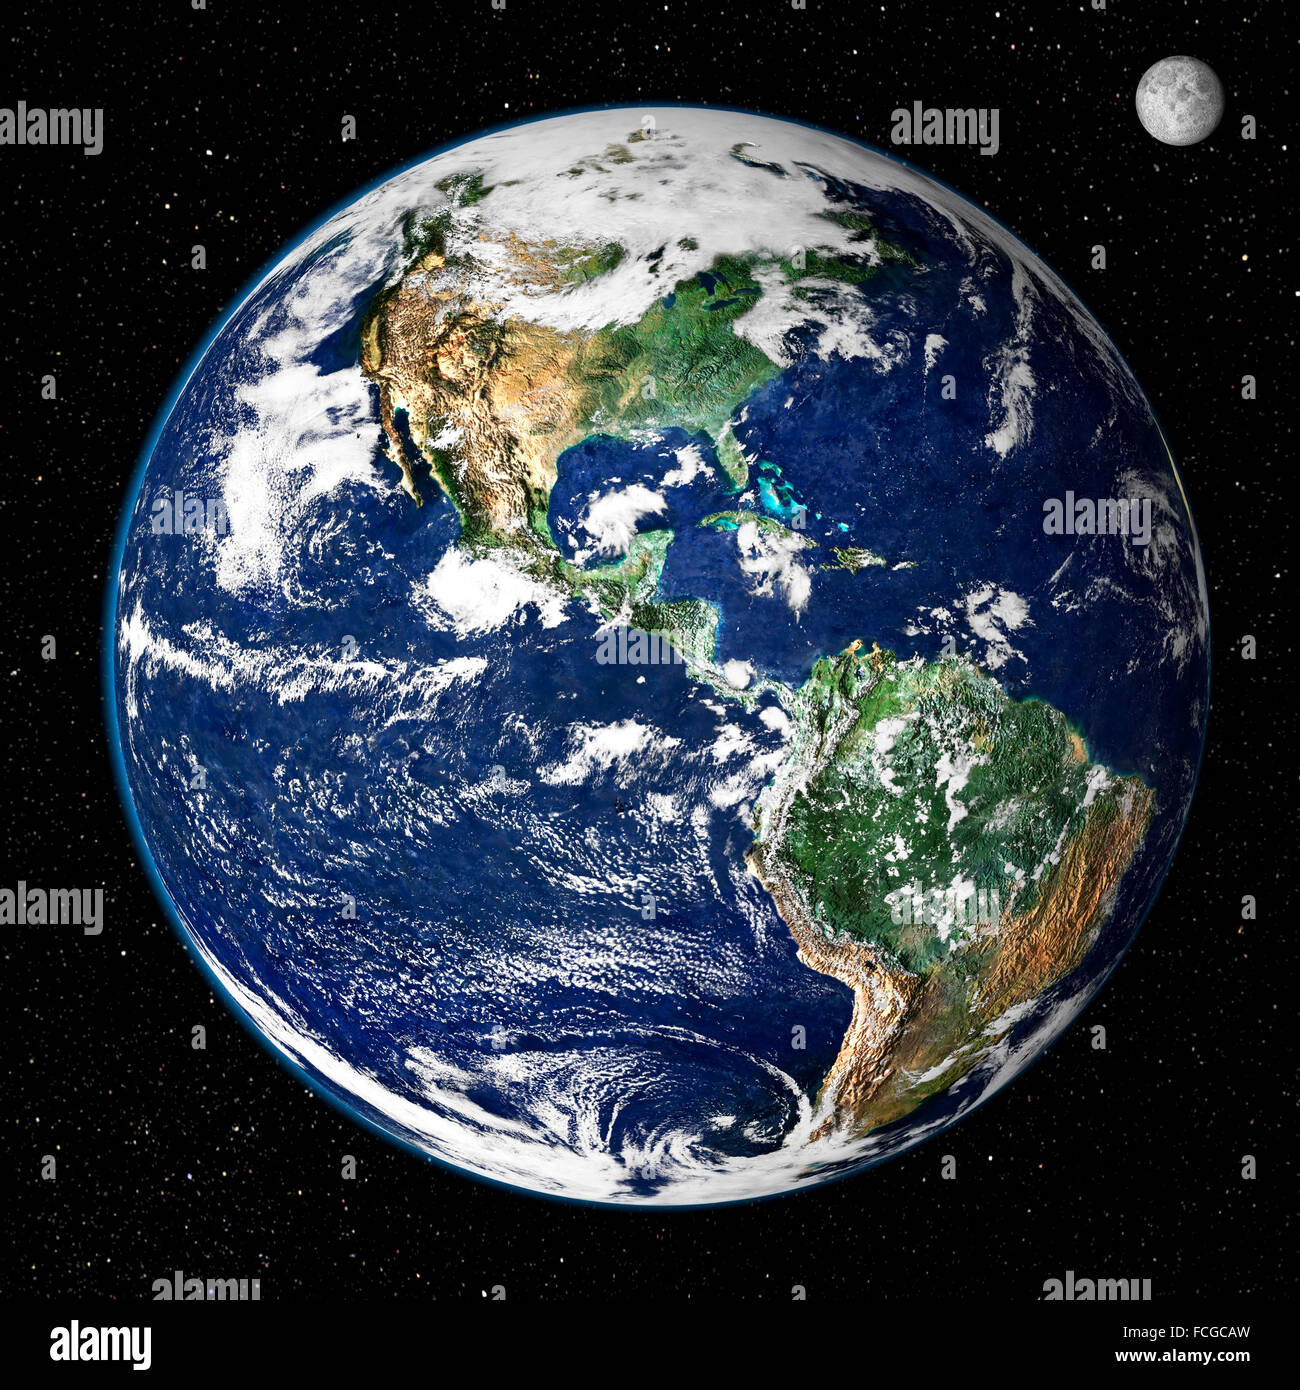 Erde aus dem Weltraum. Dieses True-Color-Bild zeigt Nord- und Südamerika, wie sie aus dem Weltraum 35.000 km (22.000 Meilen) über der Erde erscheinen würden. Das Bild ist eine Kombination von Daten aus zwei Satelliten - Moderate Resolution Imaging Spektroradiometer (MODIS) Instrument an Bord der NASA Satelliten Terra gesammelt die Land-DGM-Daten während der NOAA geostationären operative Umwelt Satelliten (geht) eine Momentaufnahme von der Erde-Wolken produziert. Bild von NASA GSFC Stockfoto